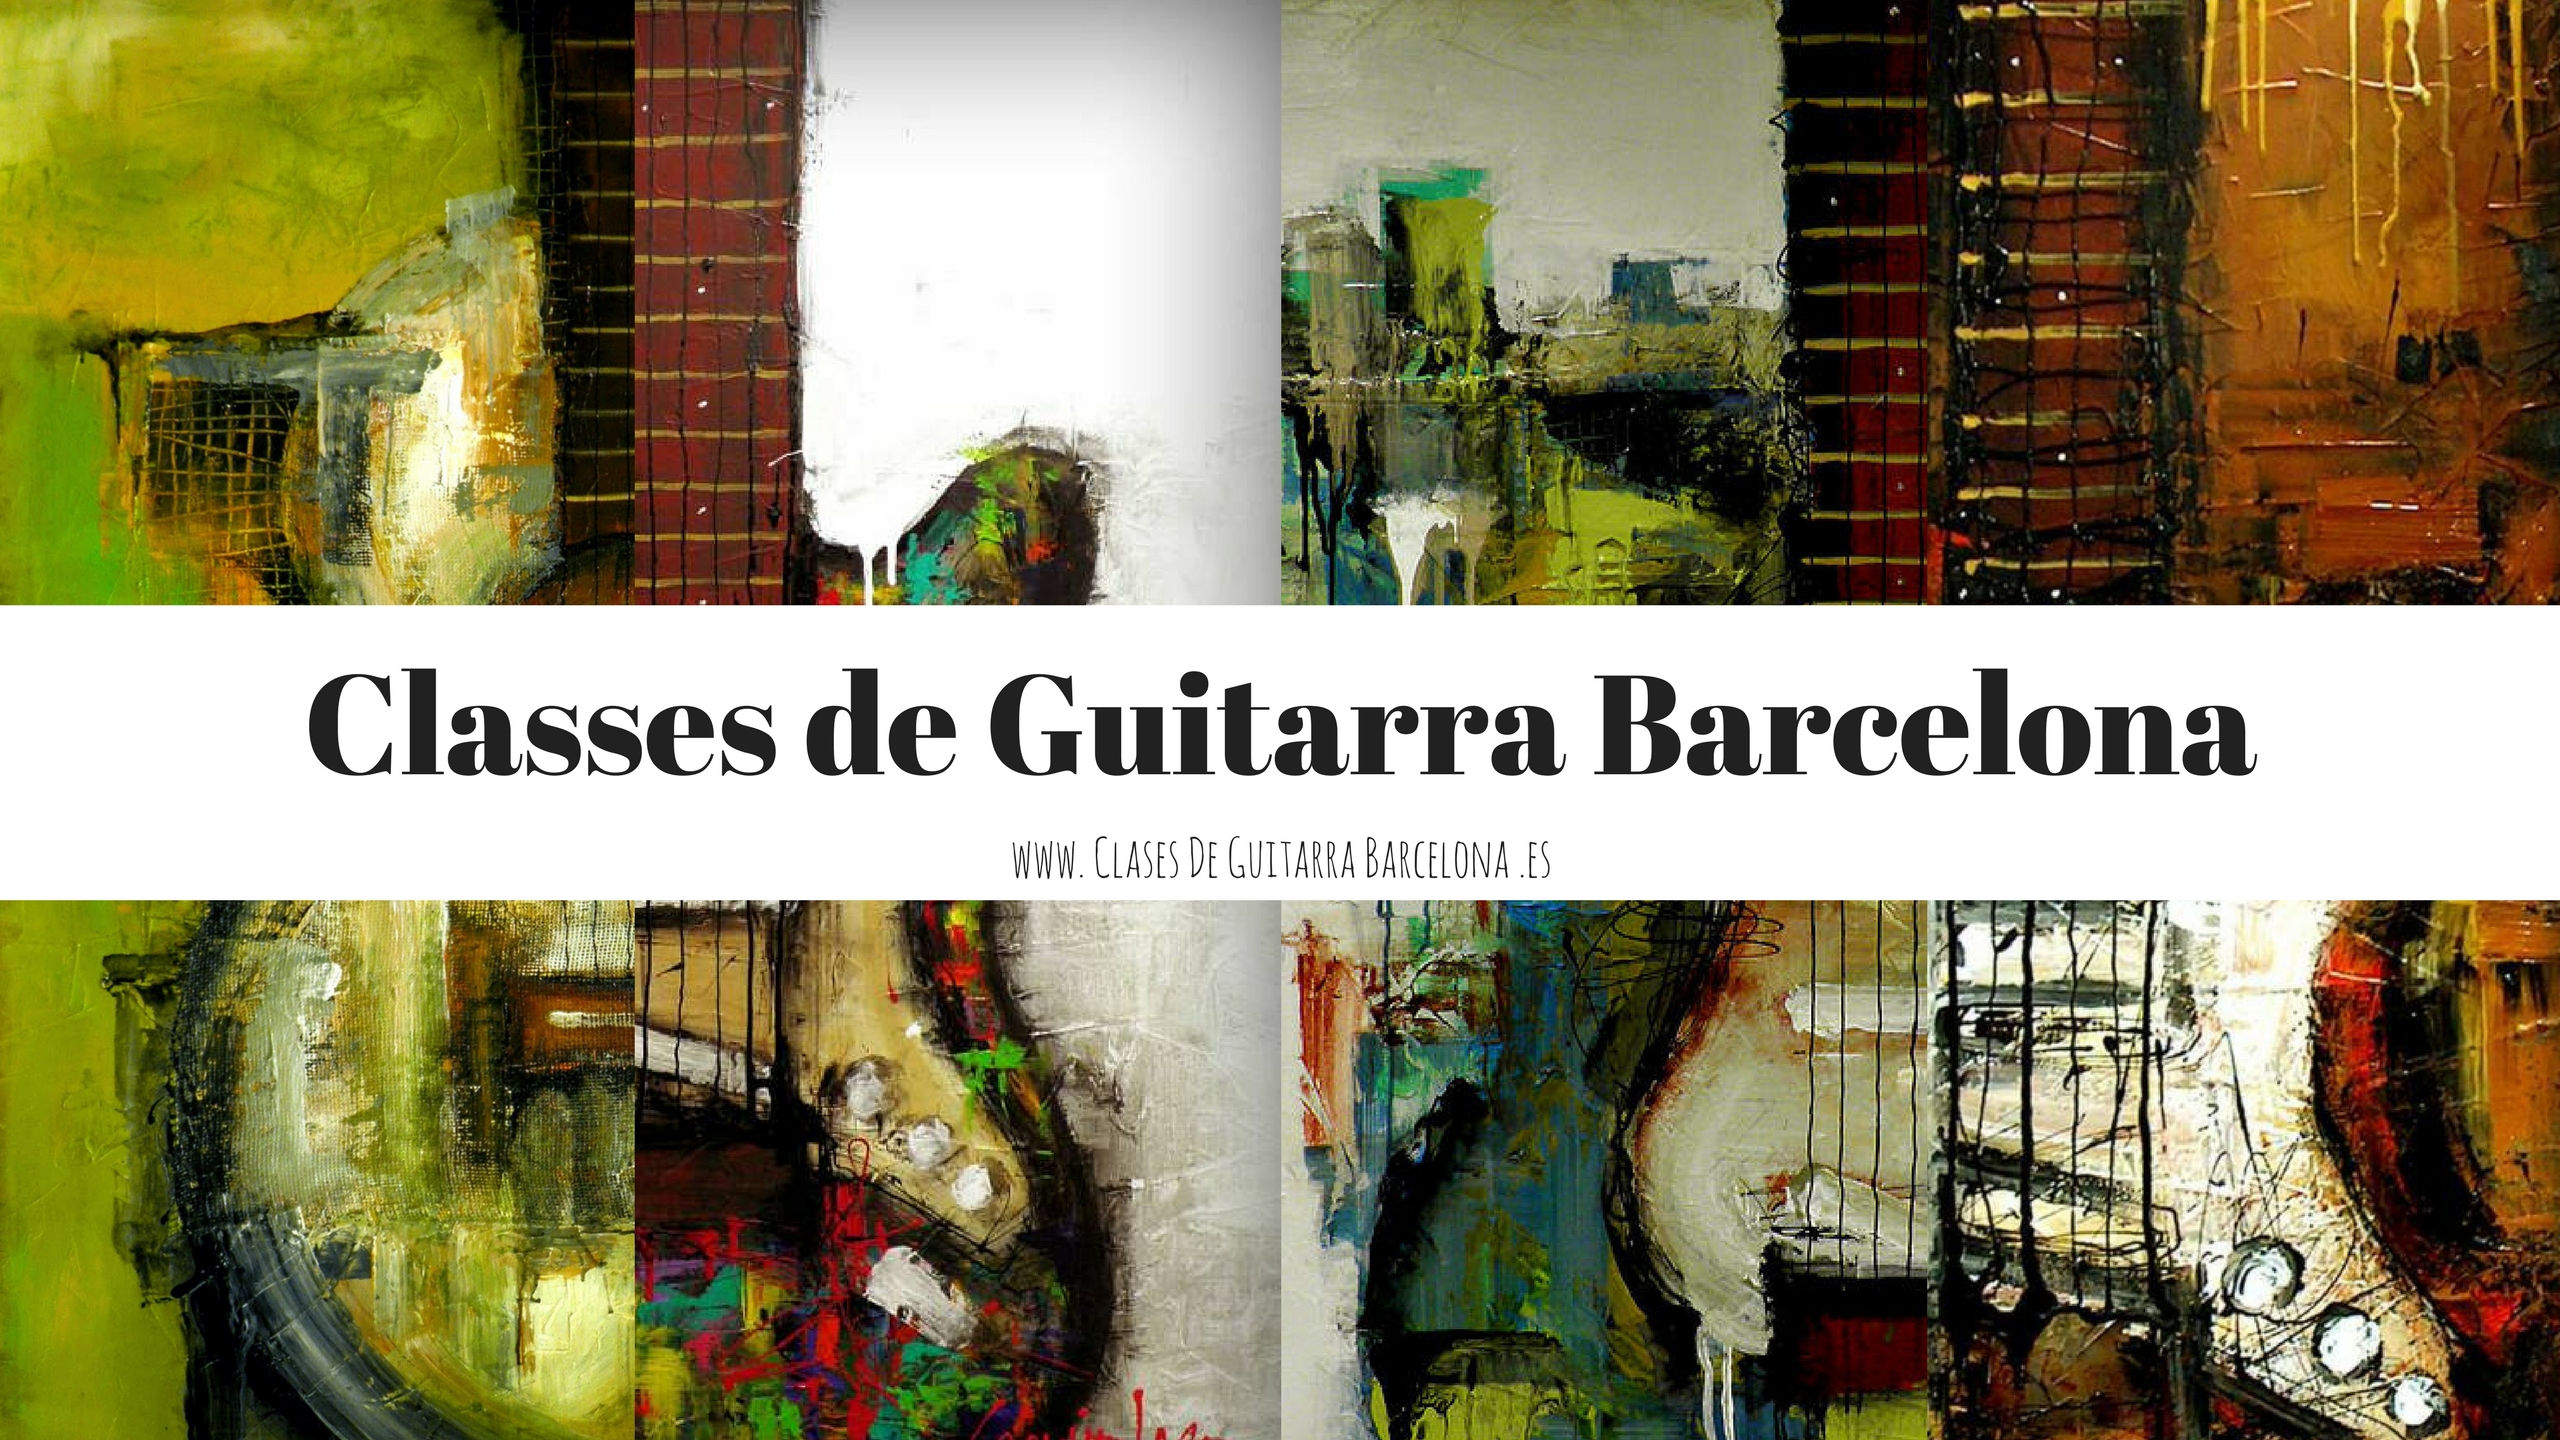 Classes de Guitarra Barcelona